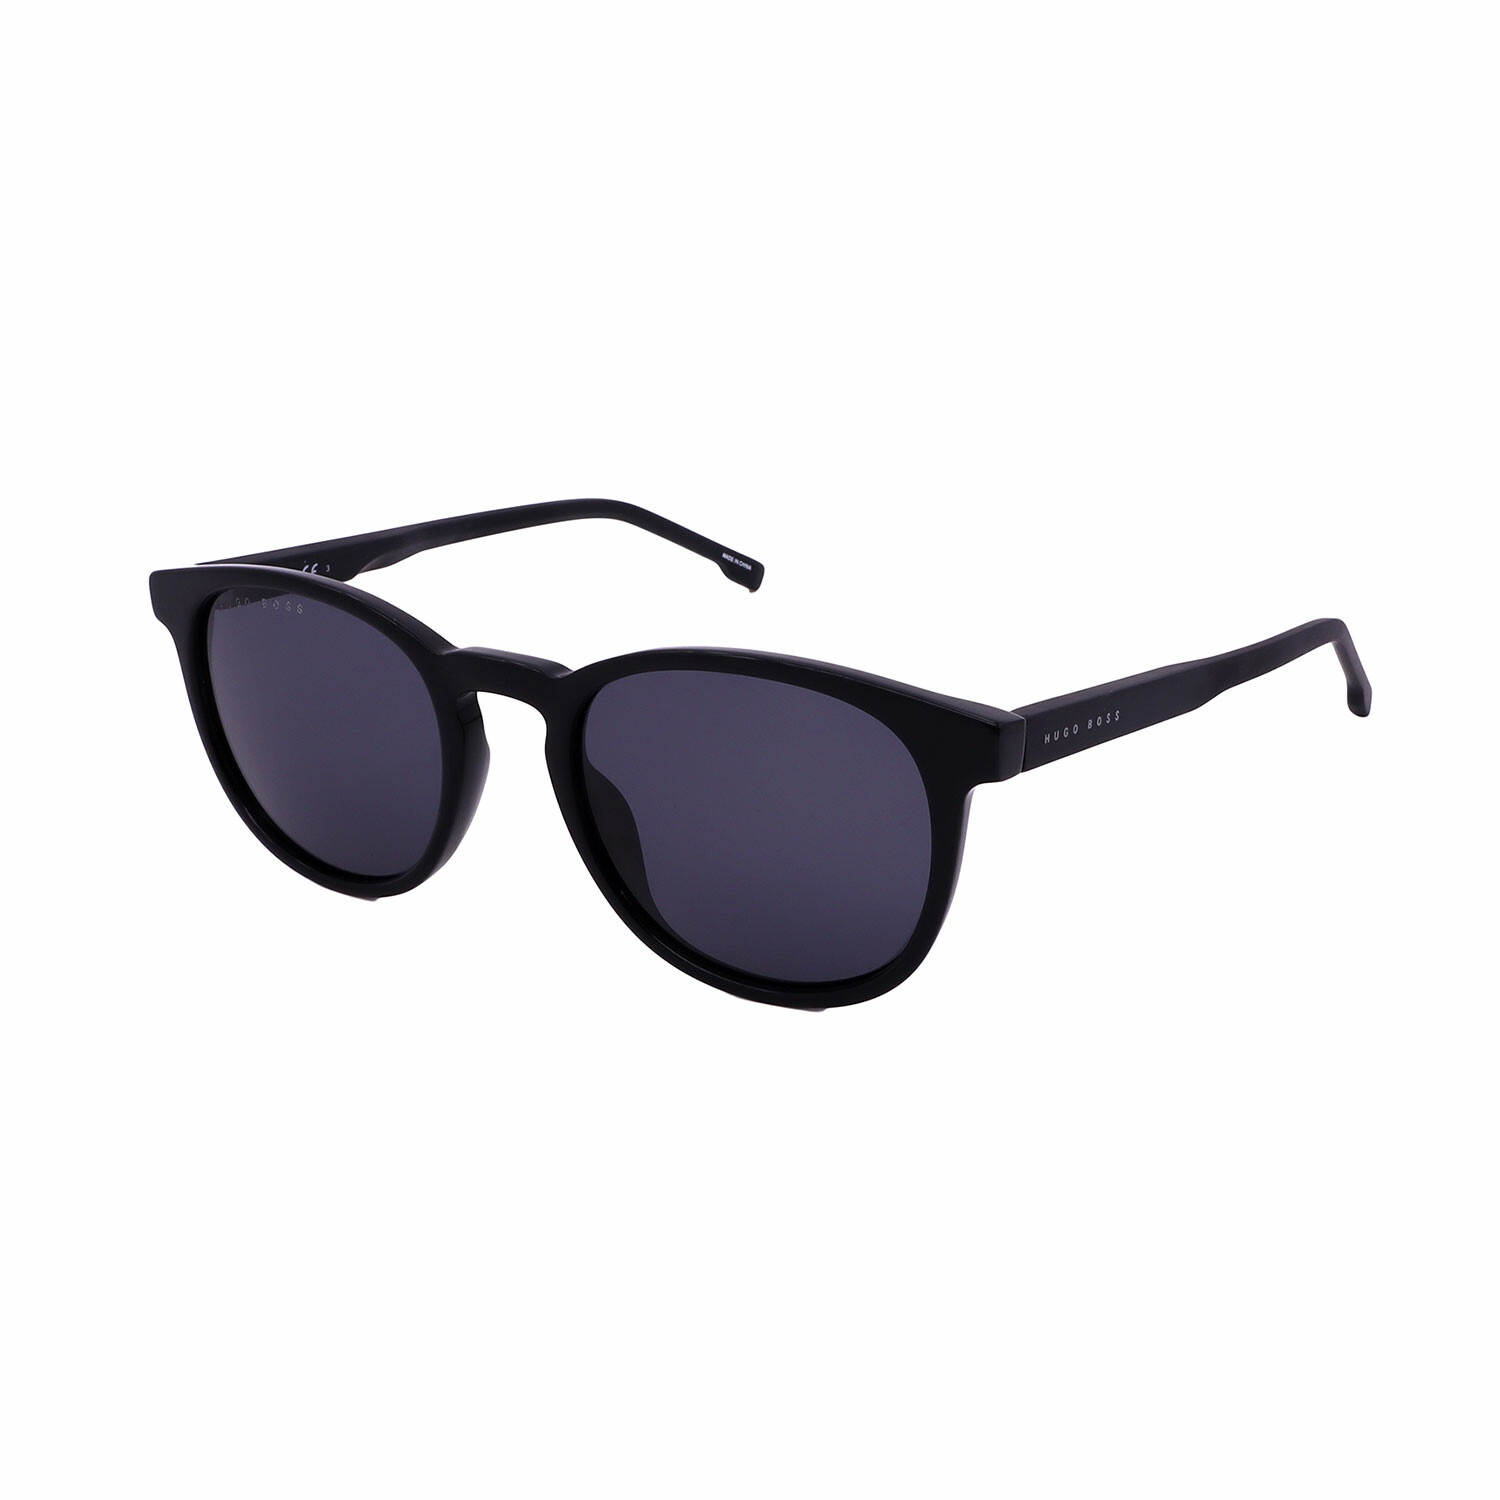 Hugo Boss // Men's 0922-S-807 Sunglasses // Black - Optical Exchange ...